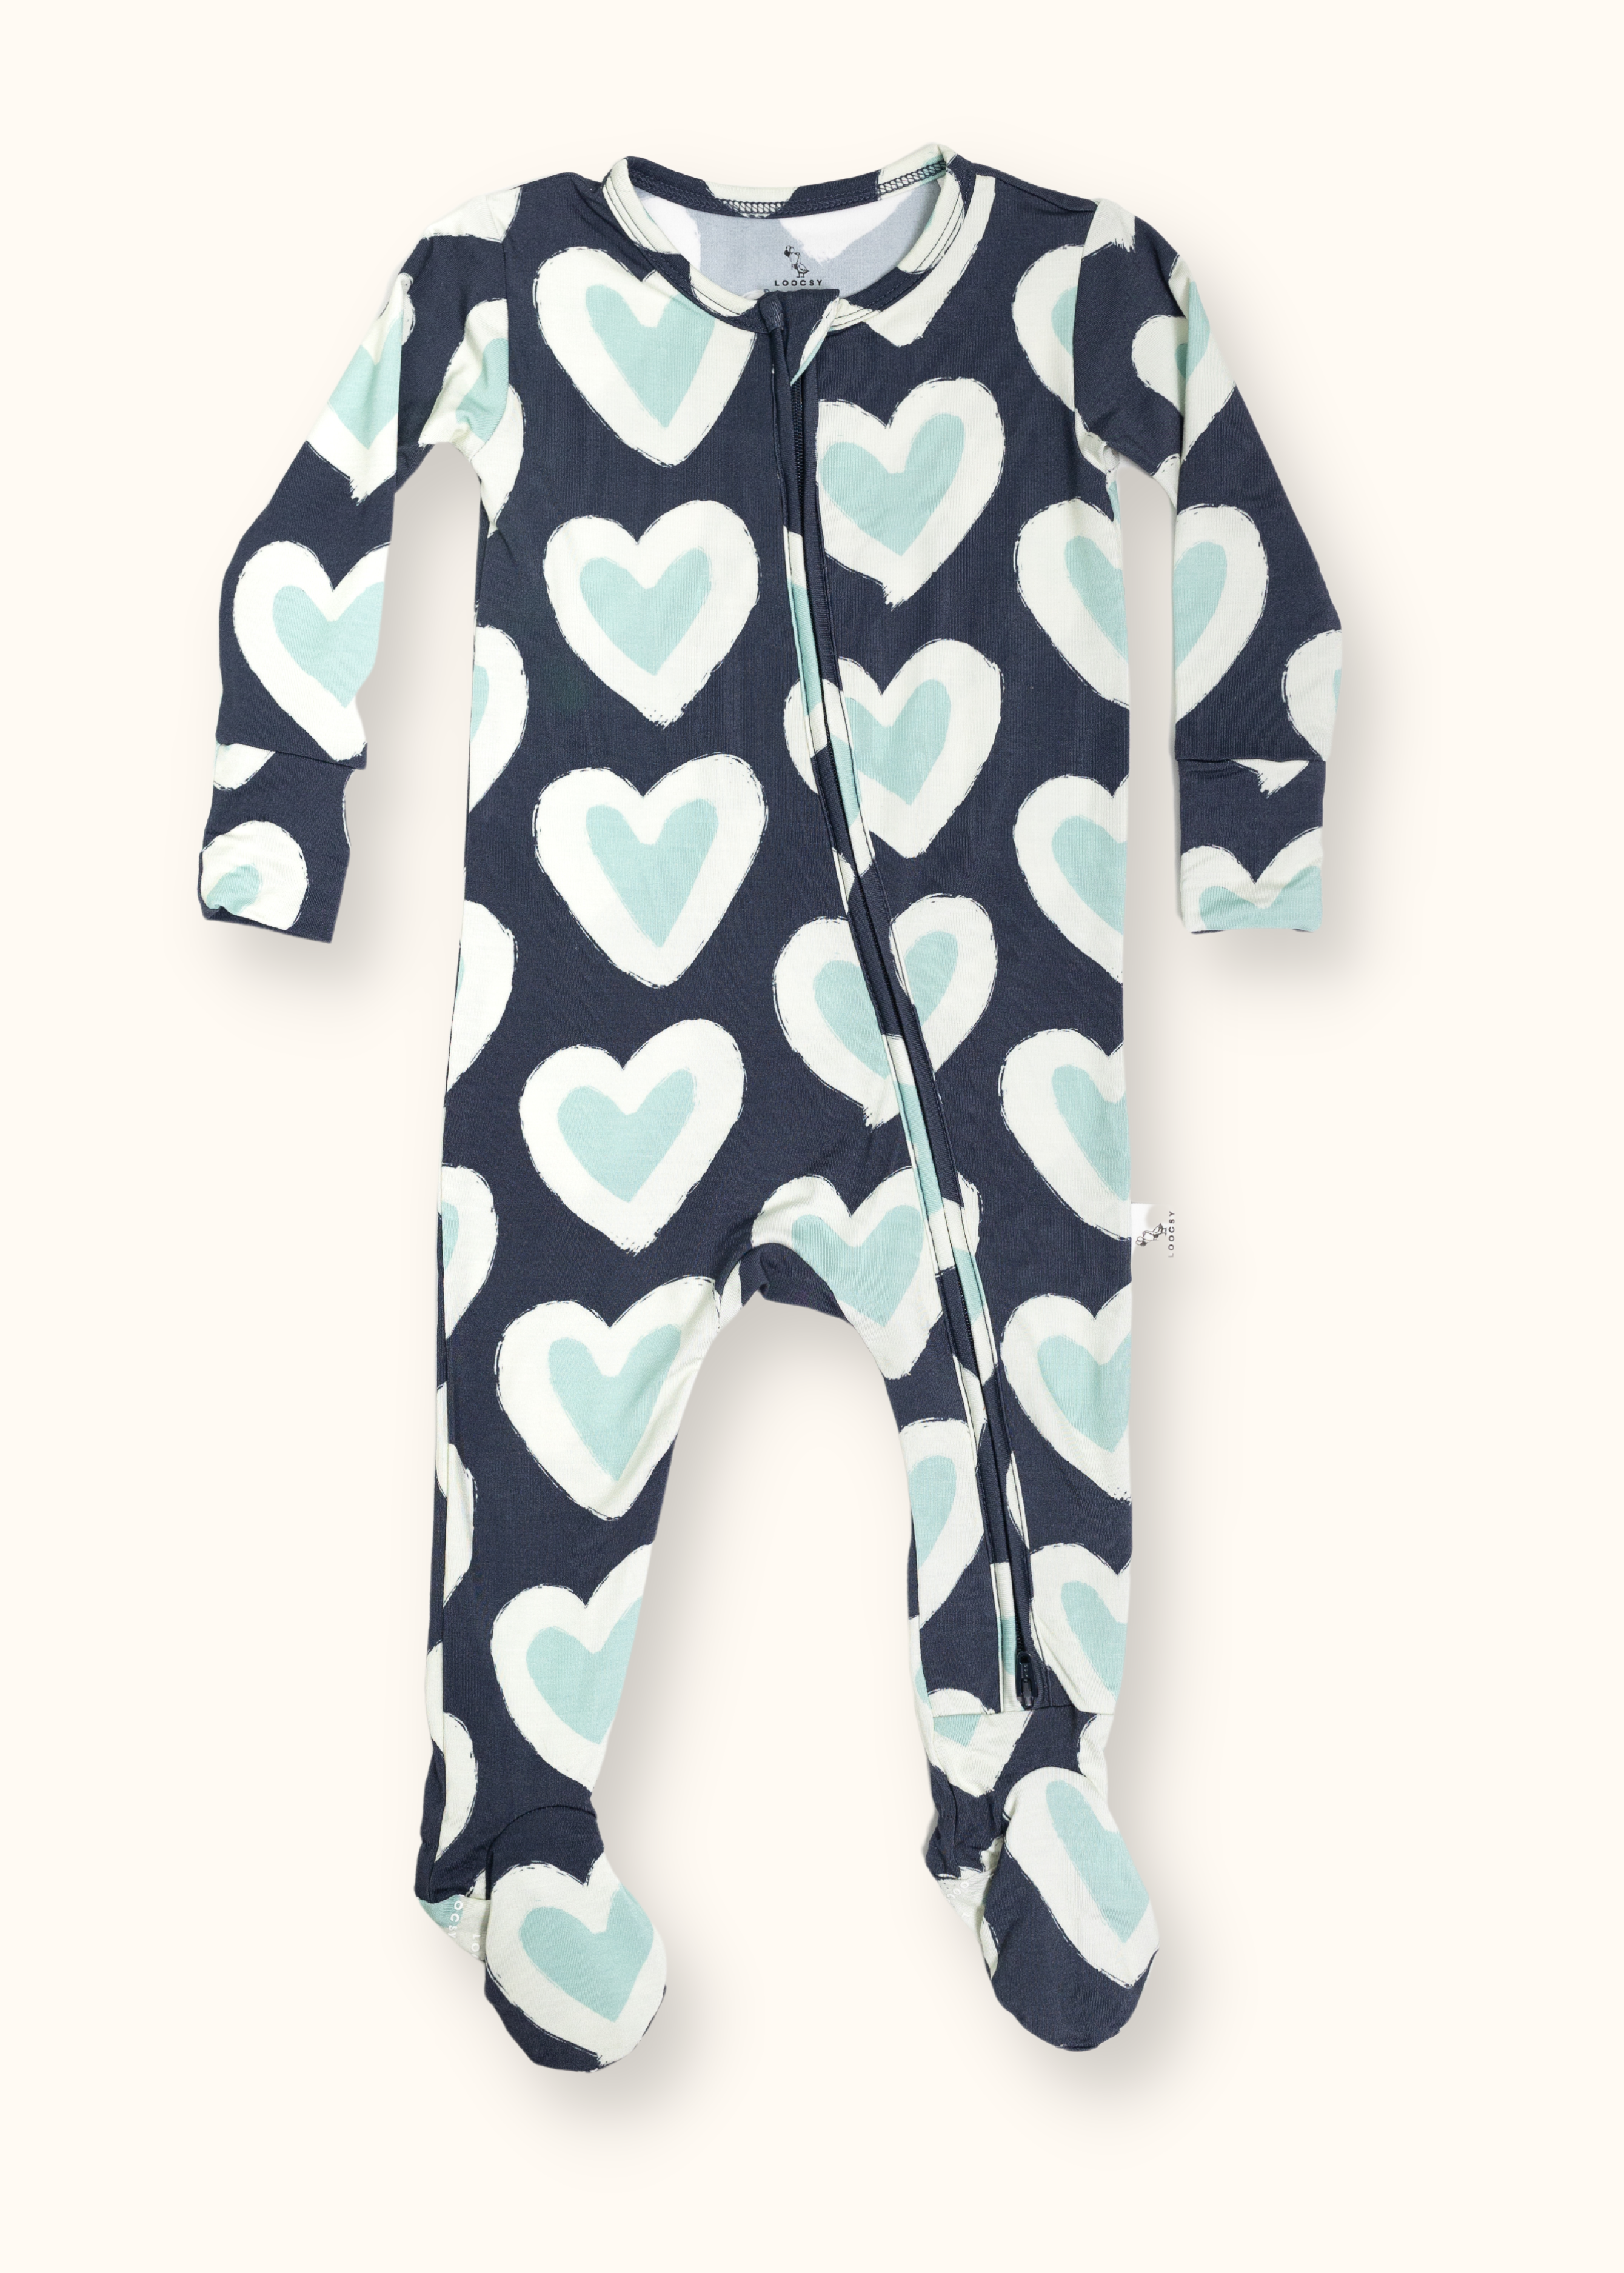 Blue Hearts Footie Pajama